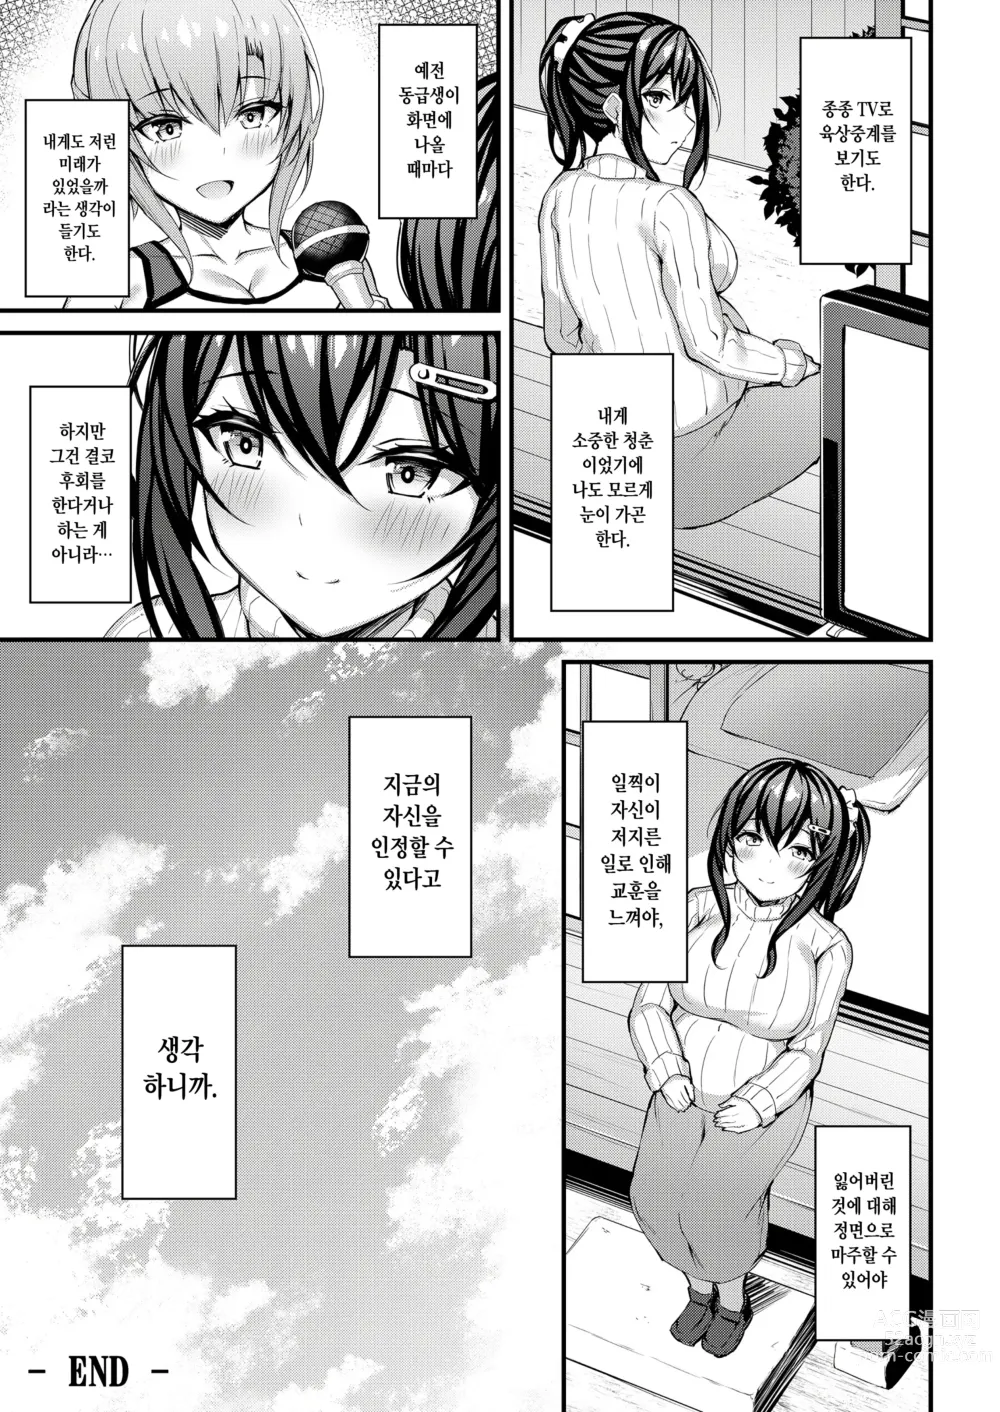 Page 24 of doujinshi 그녀가 트레이닝복을 입는 이유 -내 아저씨에게 바치는 성춘색 트레이닝복-